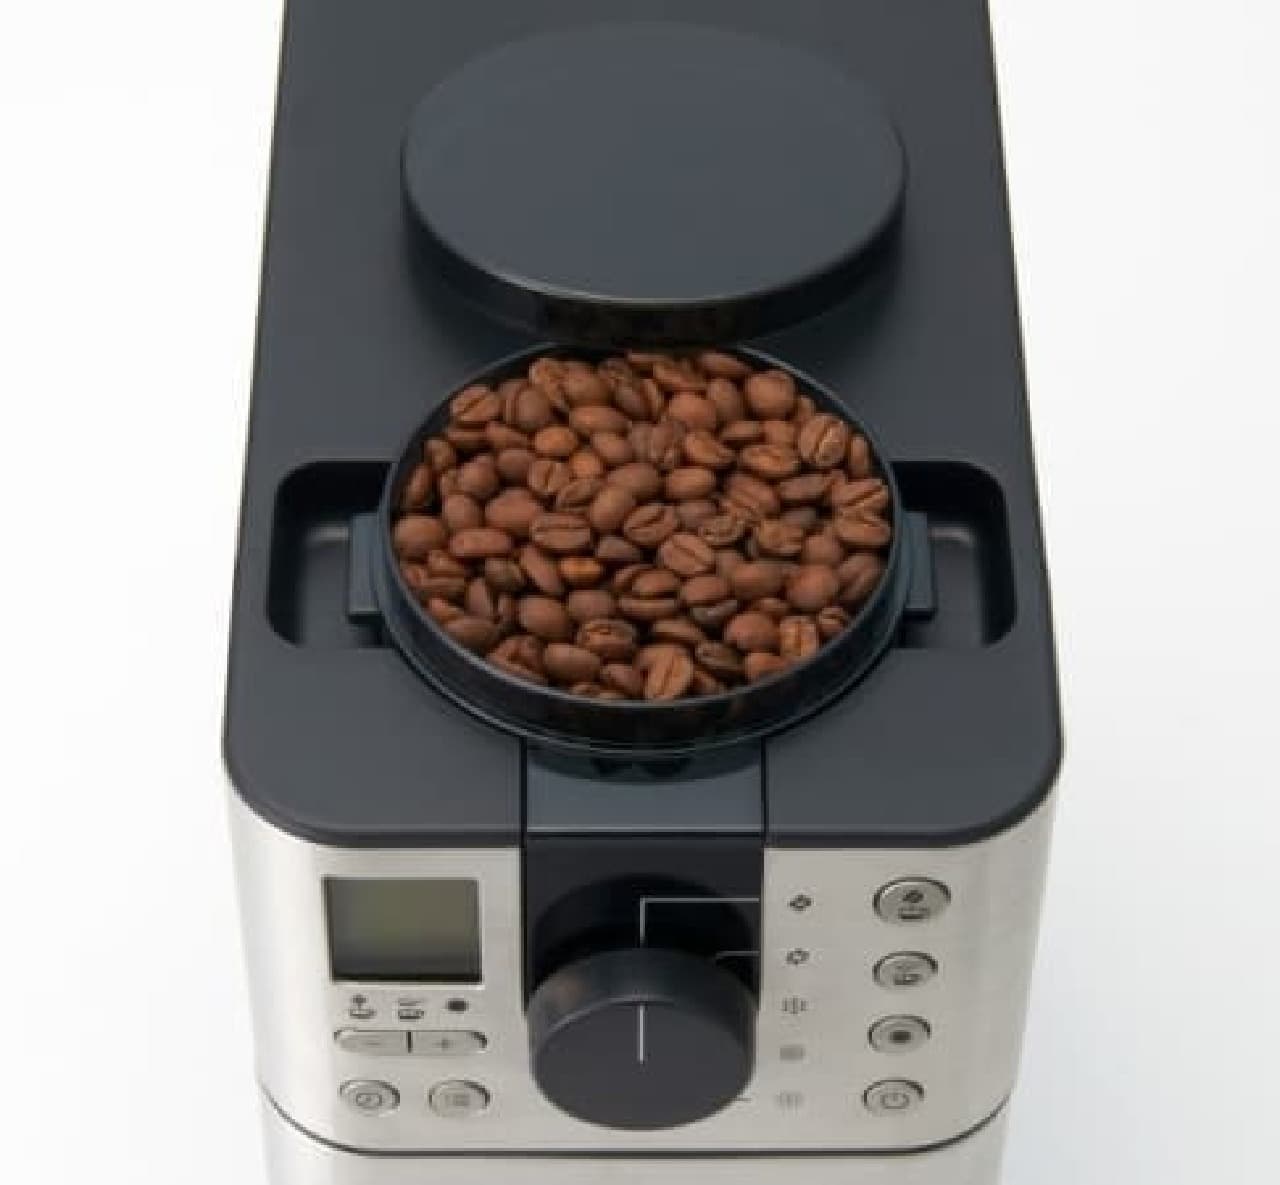 無印良品」から全自動コーヒーメーカー--一杯ごとに挽きたて、タイマー設定も可能 [えんウチ]